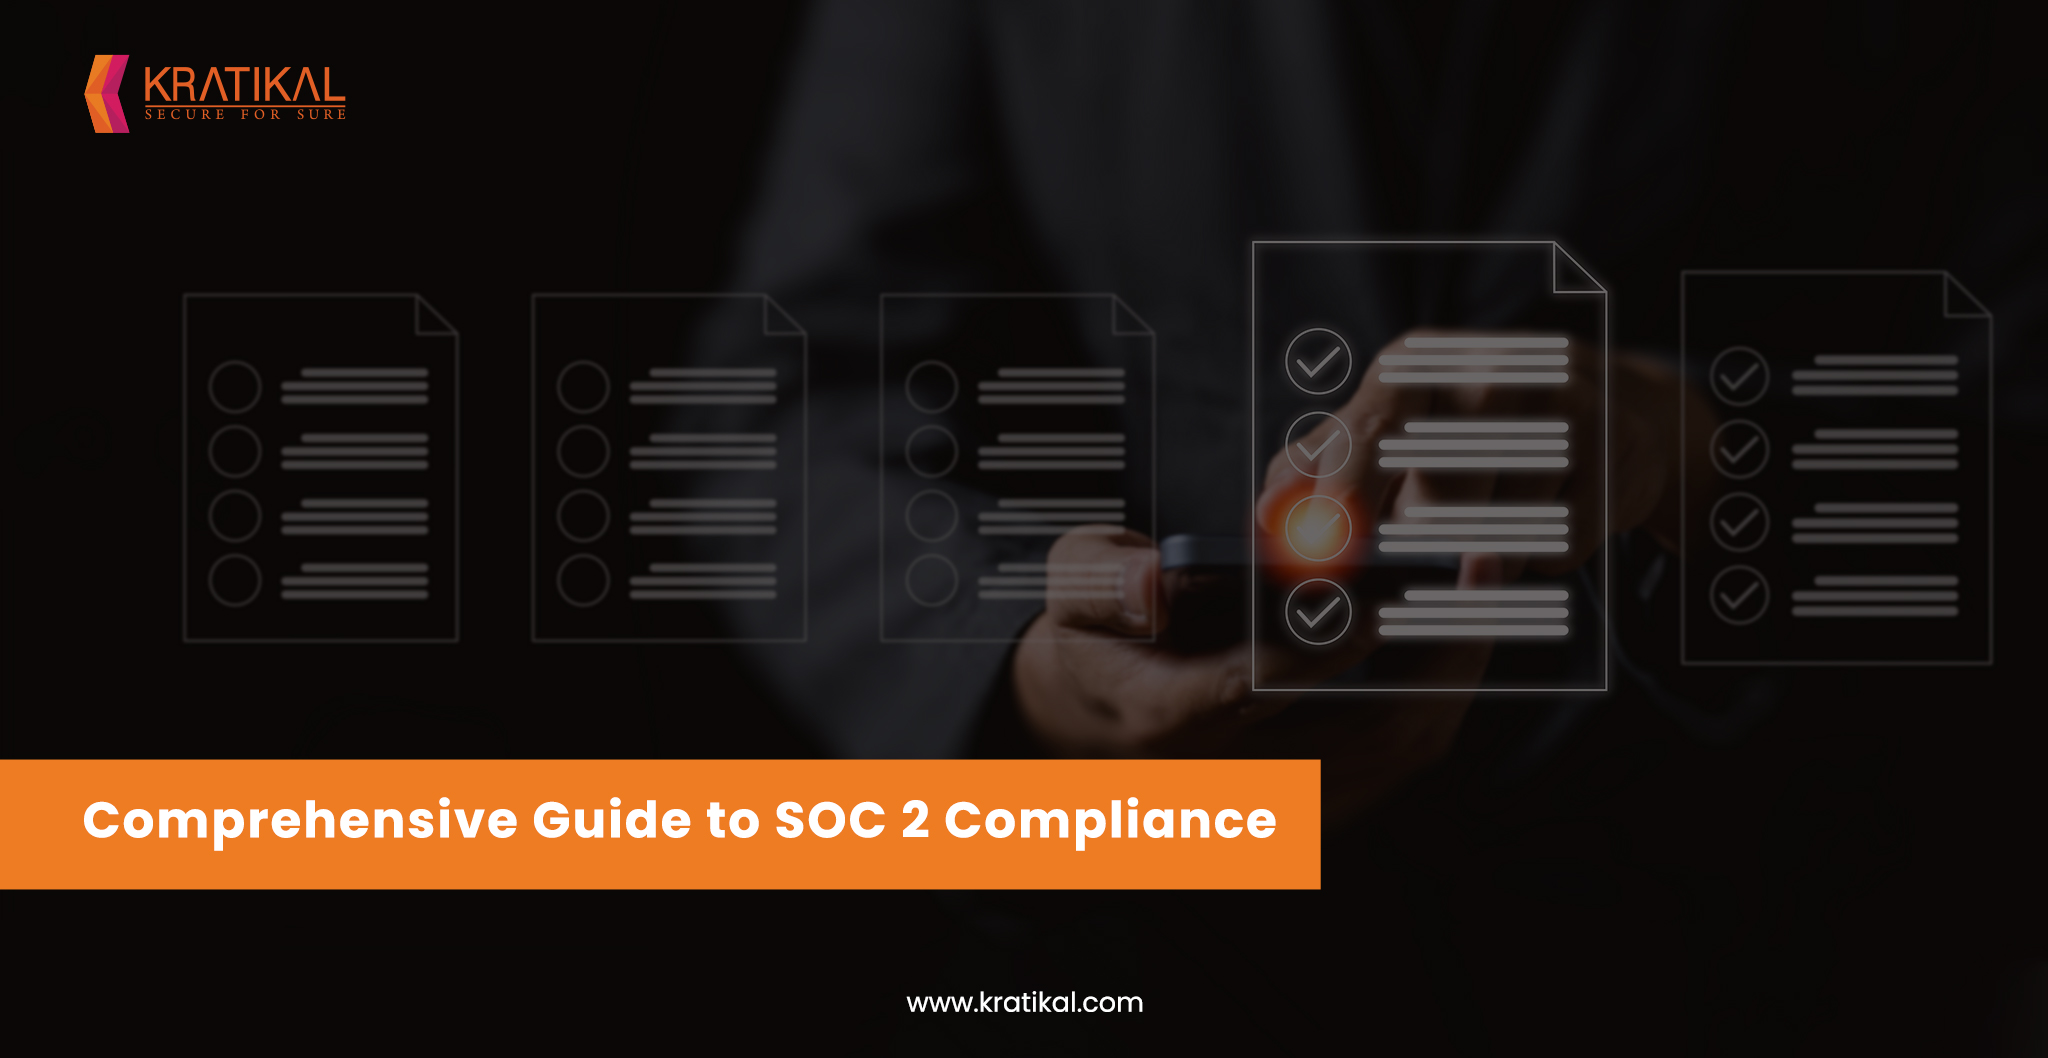 How to get SOC 2 Compliant? - Kratikal Blogs